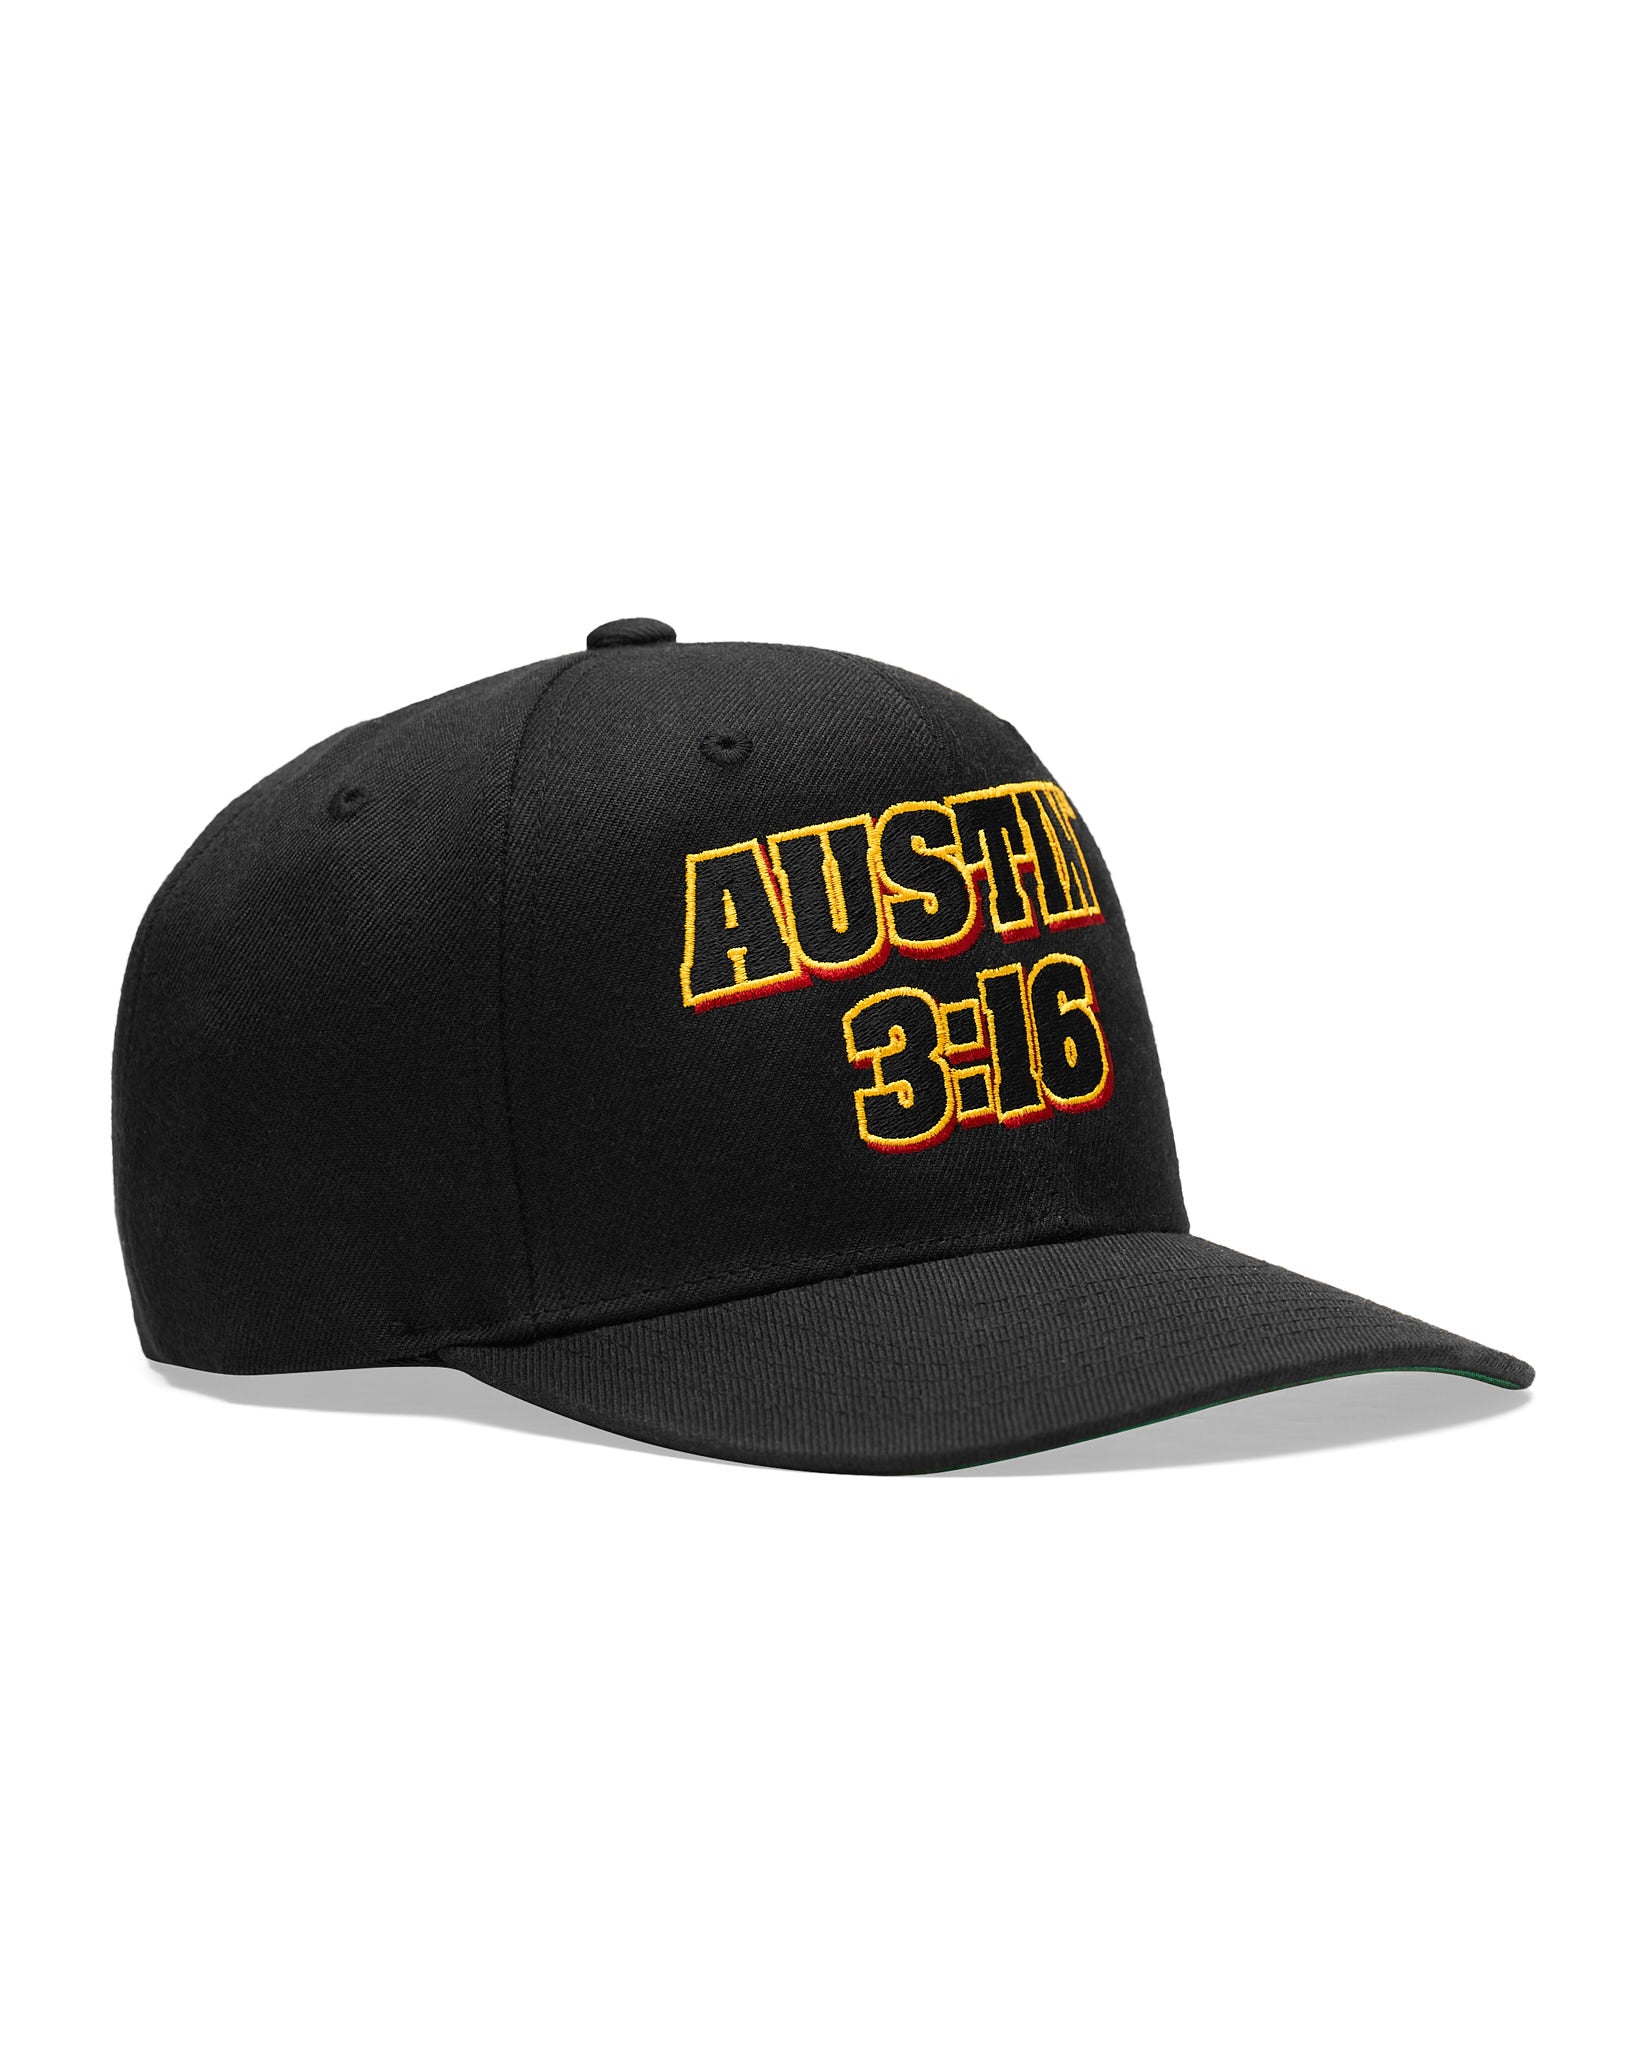 Stone Cold Steve Austin 3:16 Snapback Hat